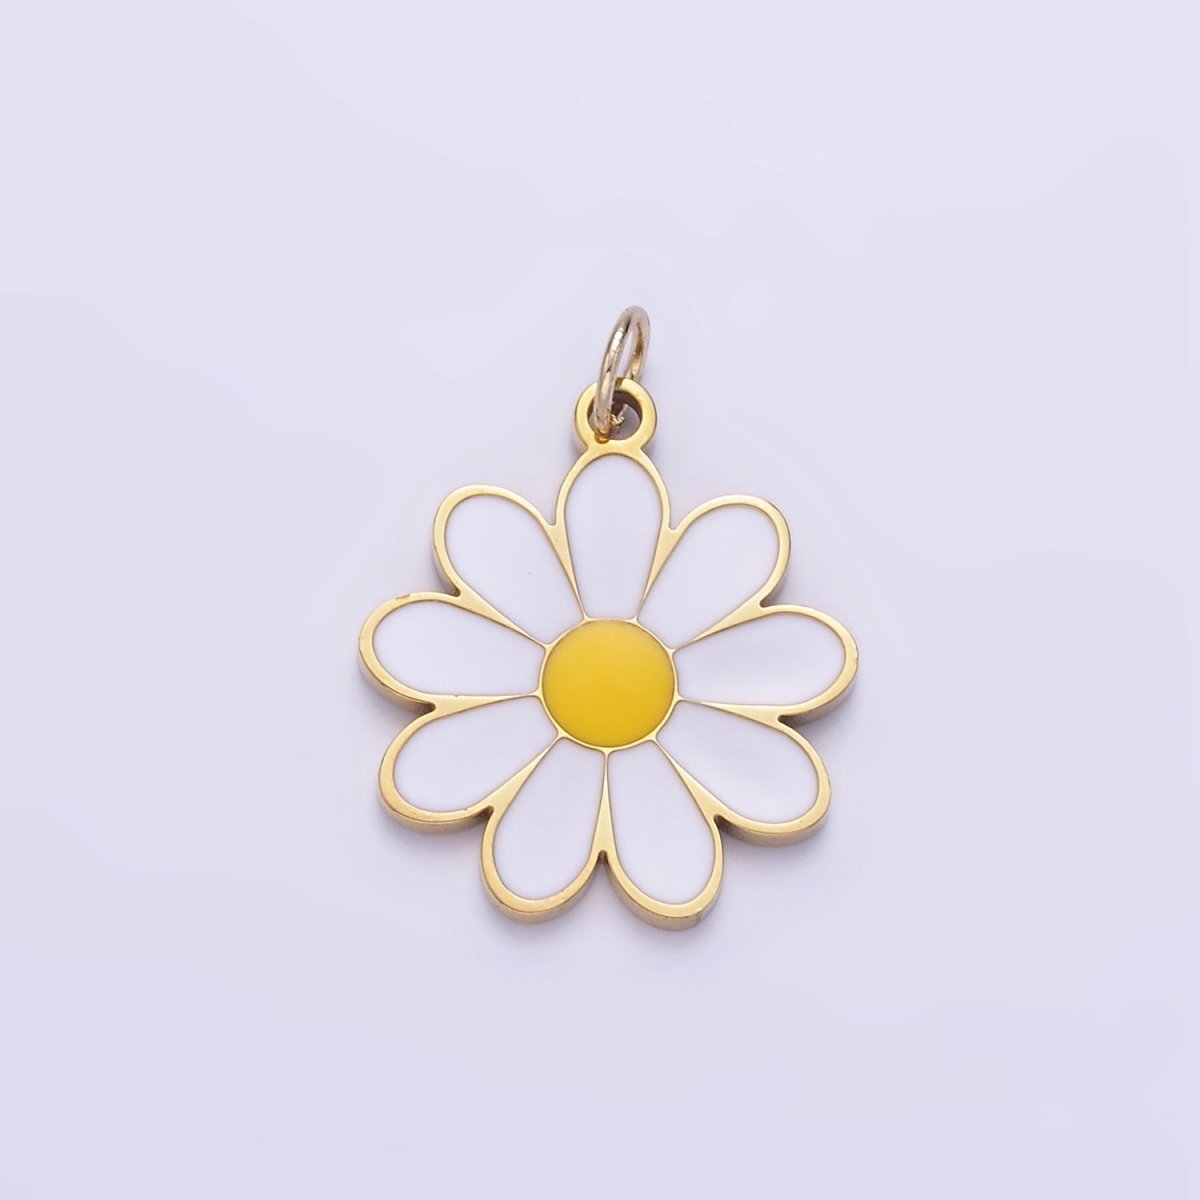 Stainless Steel White Enamel Daisy Flower Charm | P1014 - DLUXCA